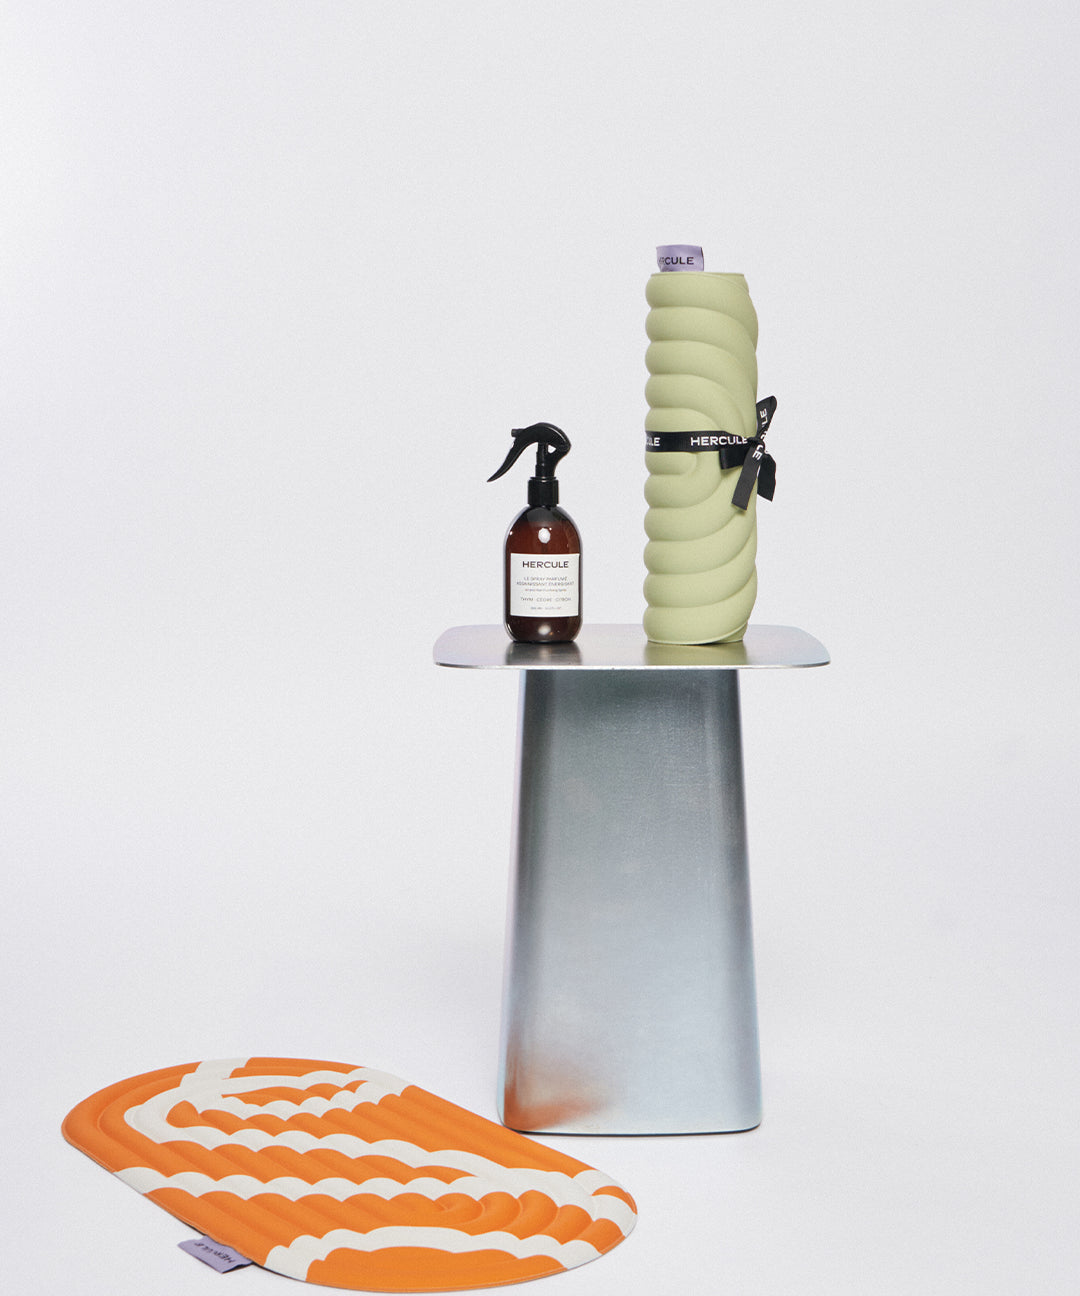 Mini tapis de sol pad de confort de la marque hercule studio modèle galé couleur pistache sur fond blanc avec spray et pad de confort bari orange pop